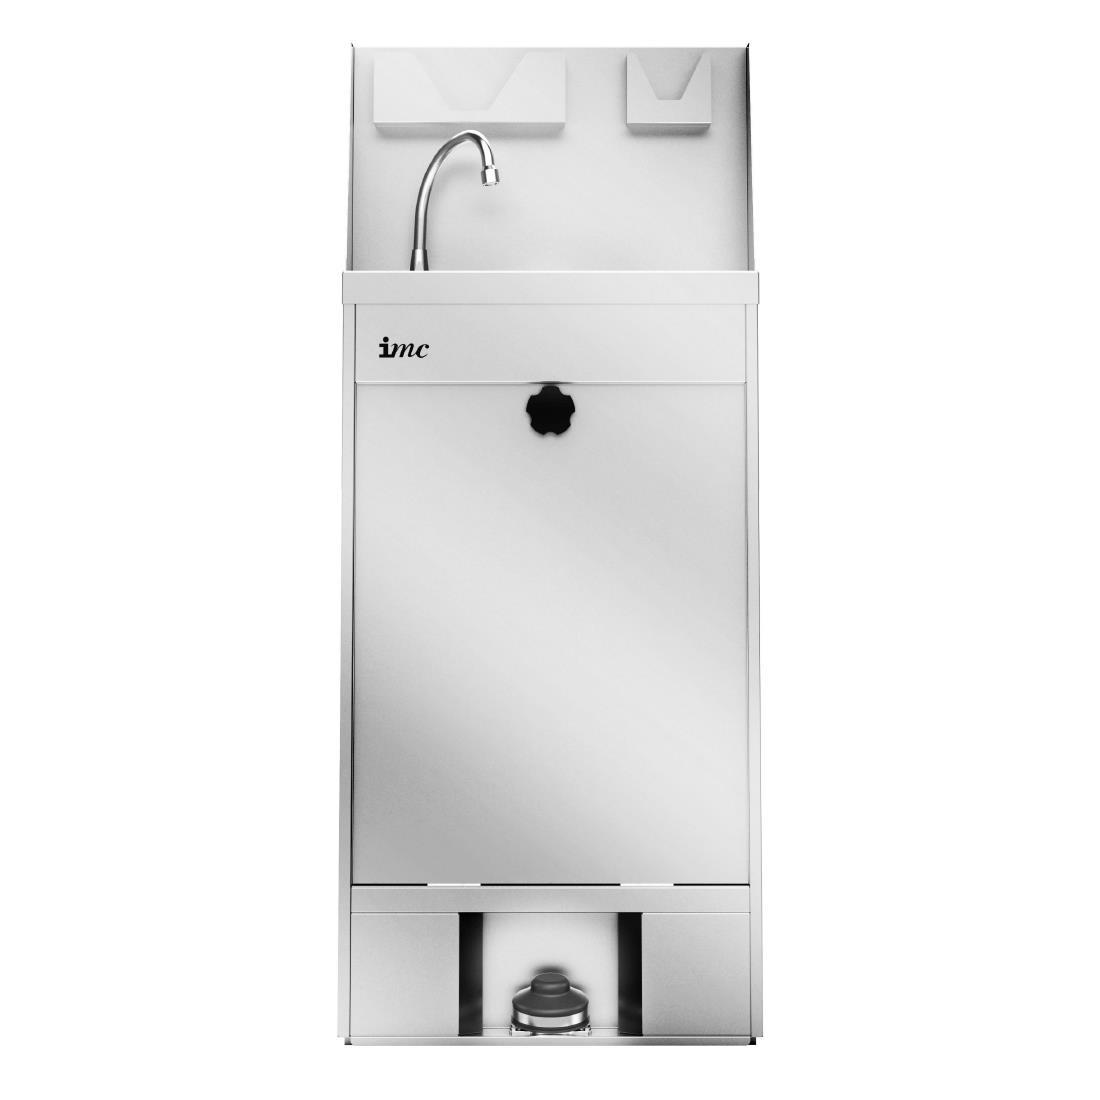 IMC Mobile Hand Wash Station 20Ltr - DT468  - 2